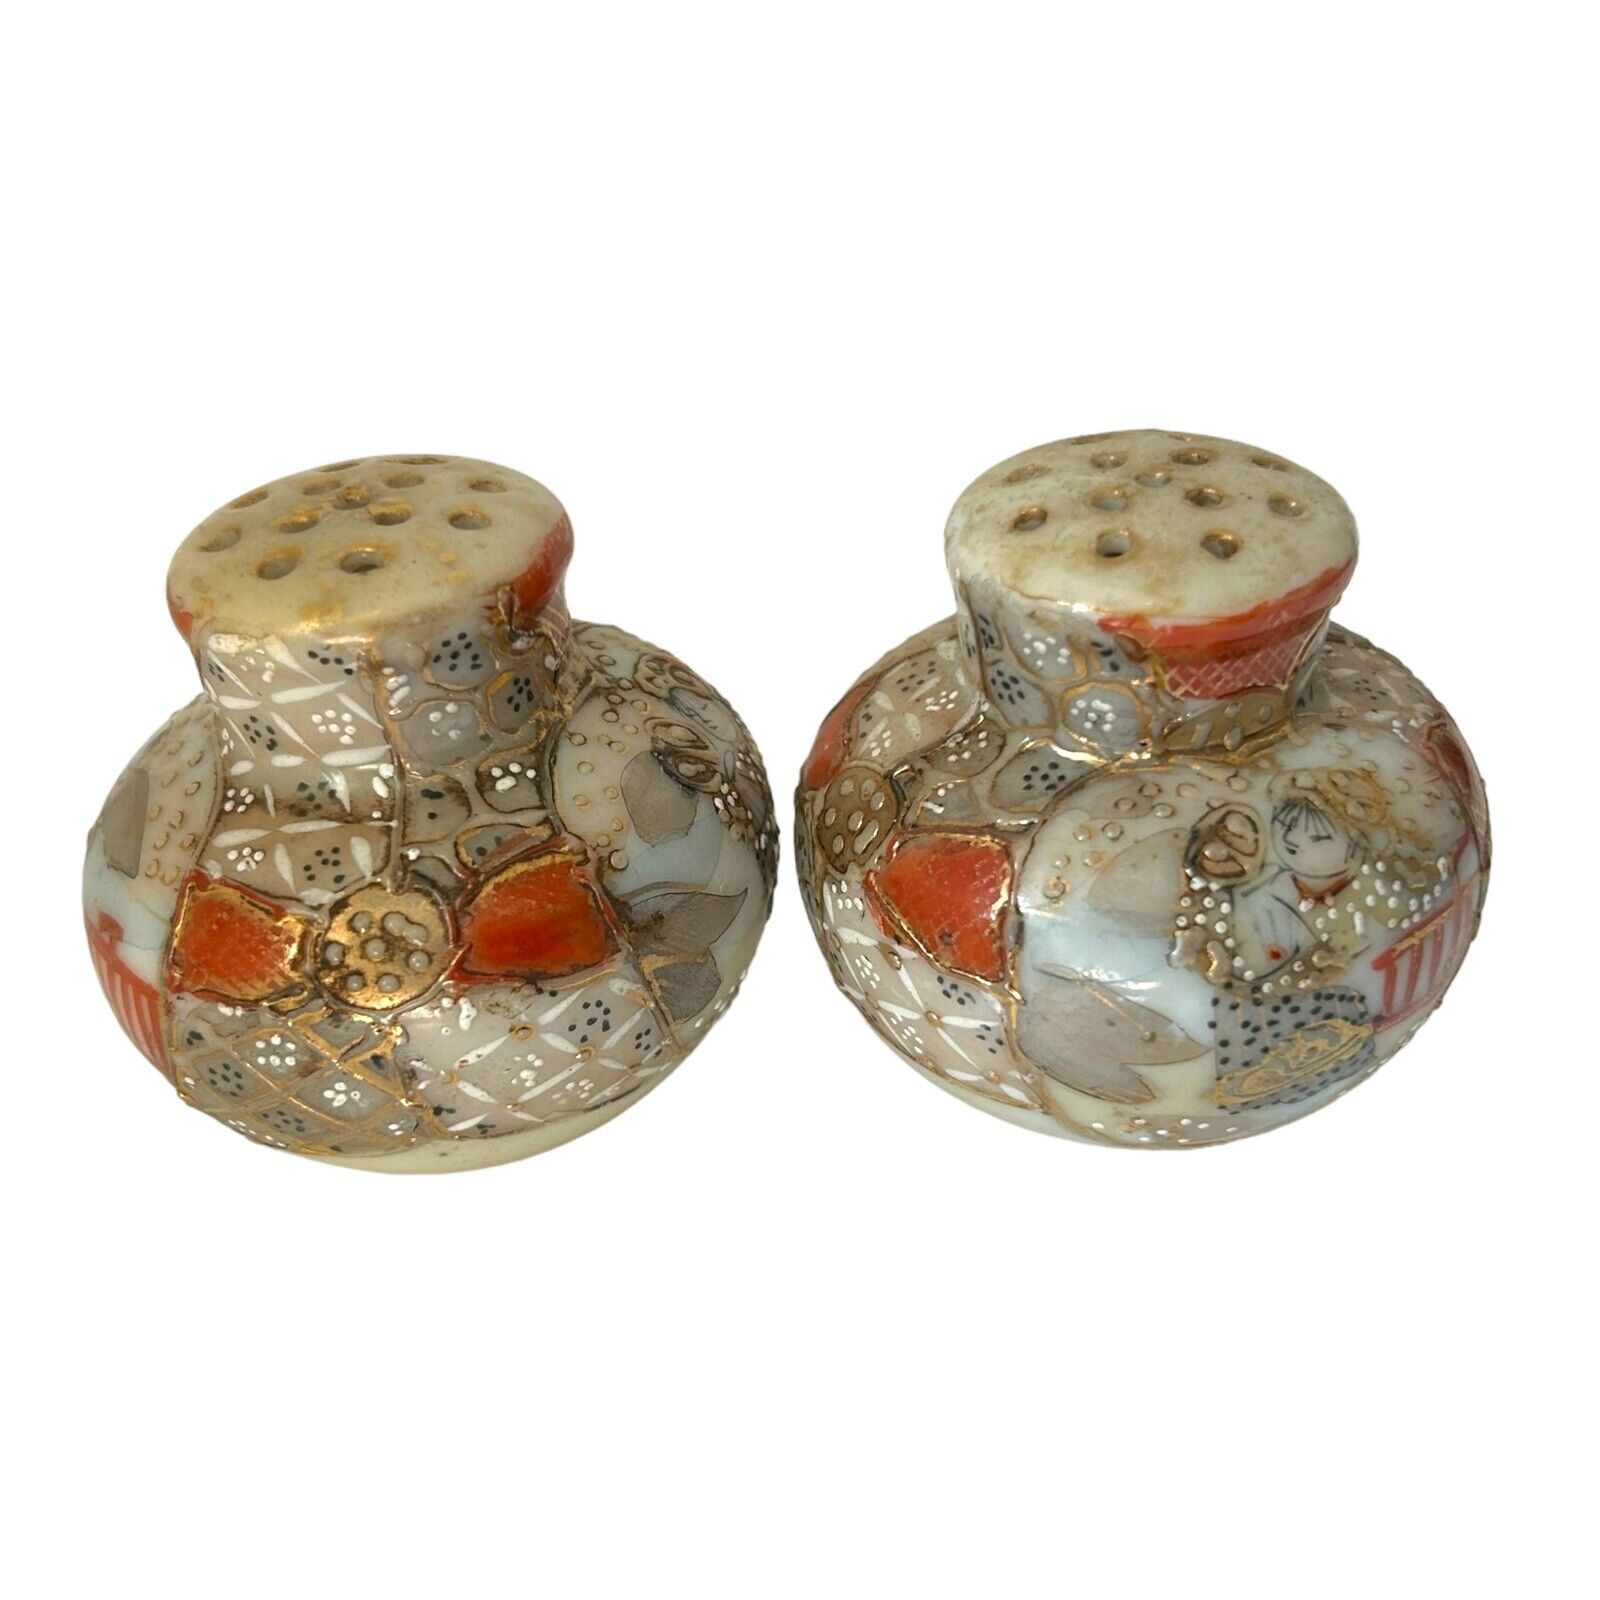 Vintage Oriental Japanese Satsuma Handpainted Salt & Pepper Shakers Geisha